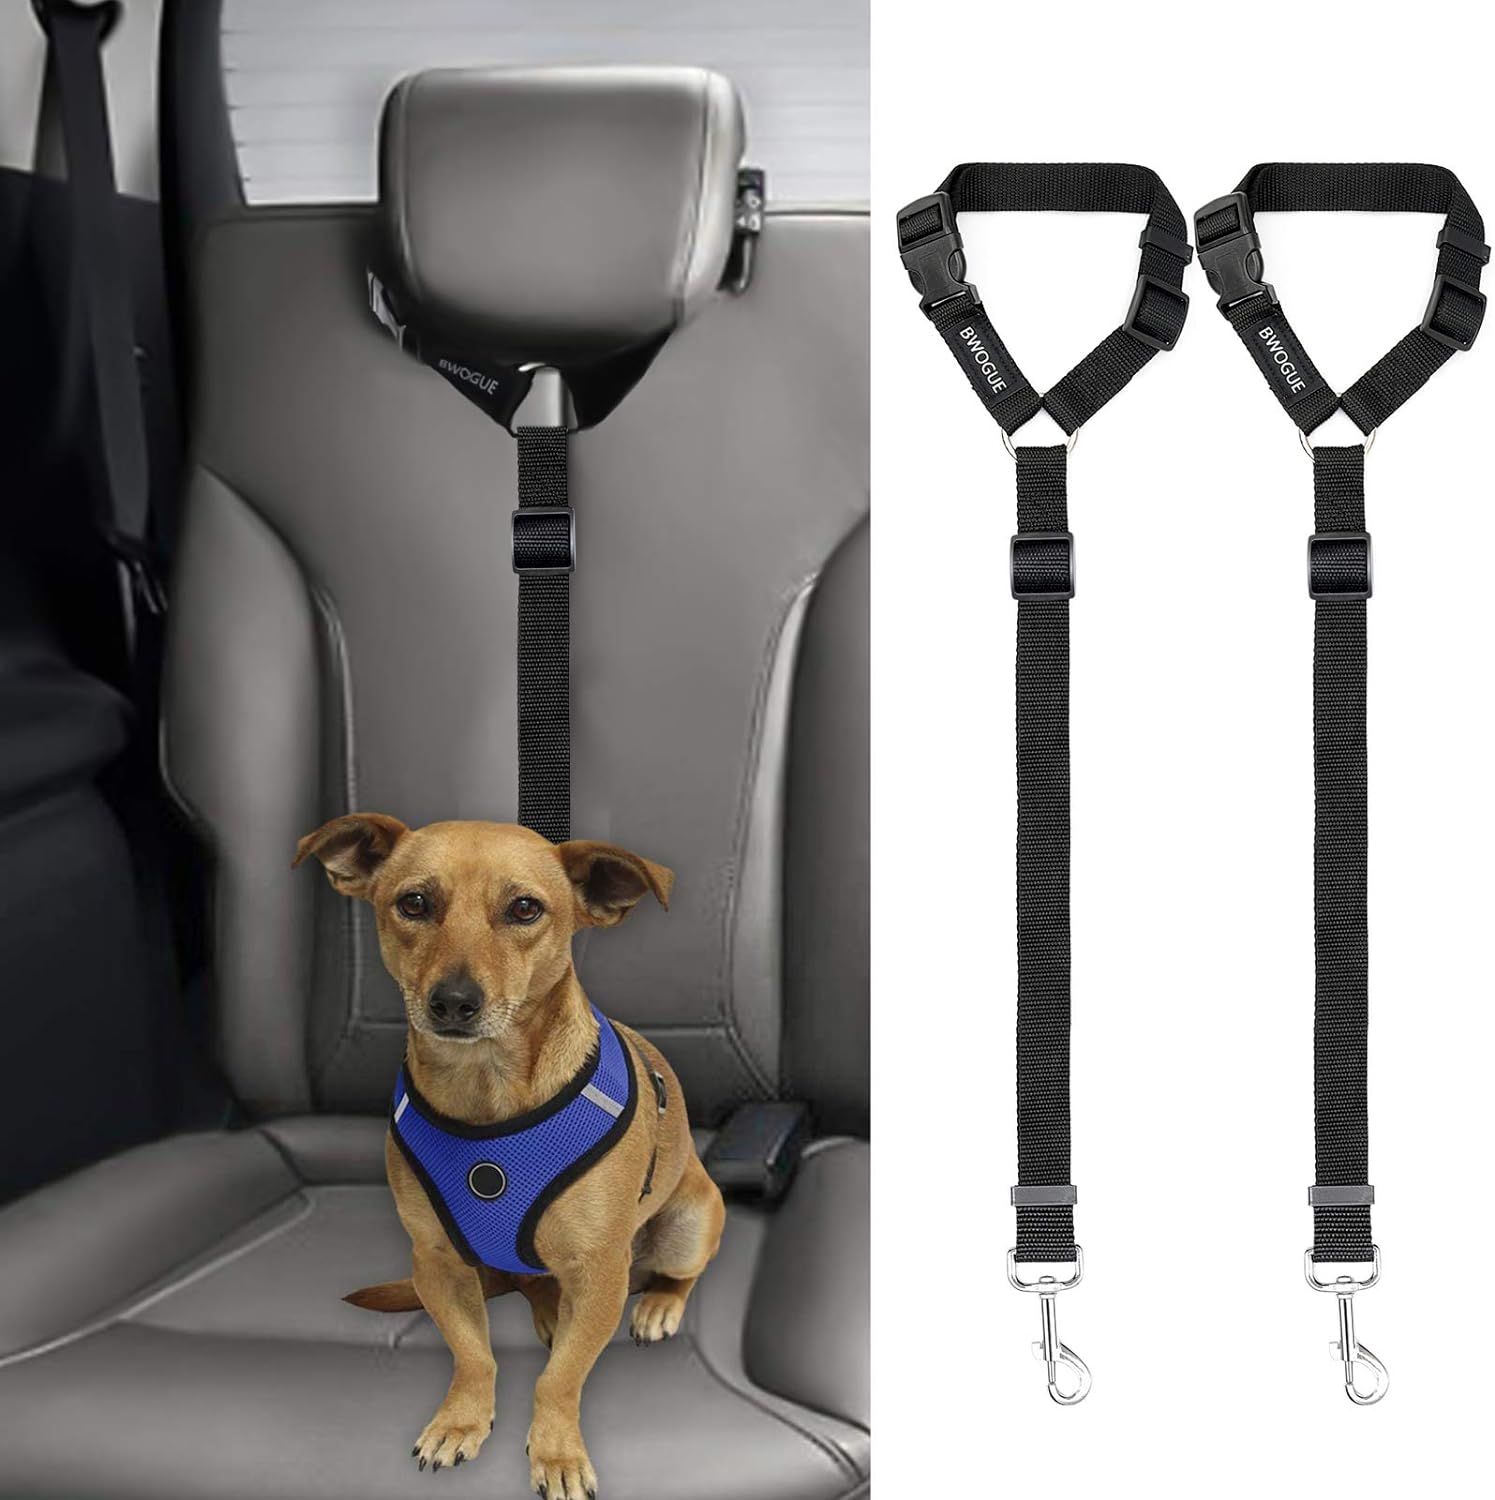 NEW Cinturon Seguridad de Coche para Perros, con Broche al Cinturon de  Seguridad